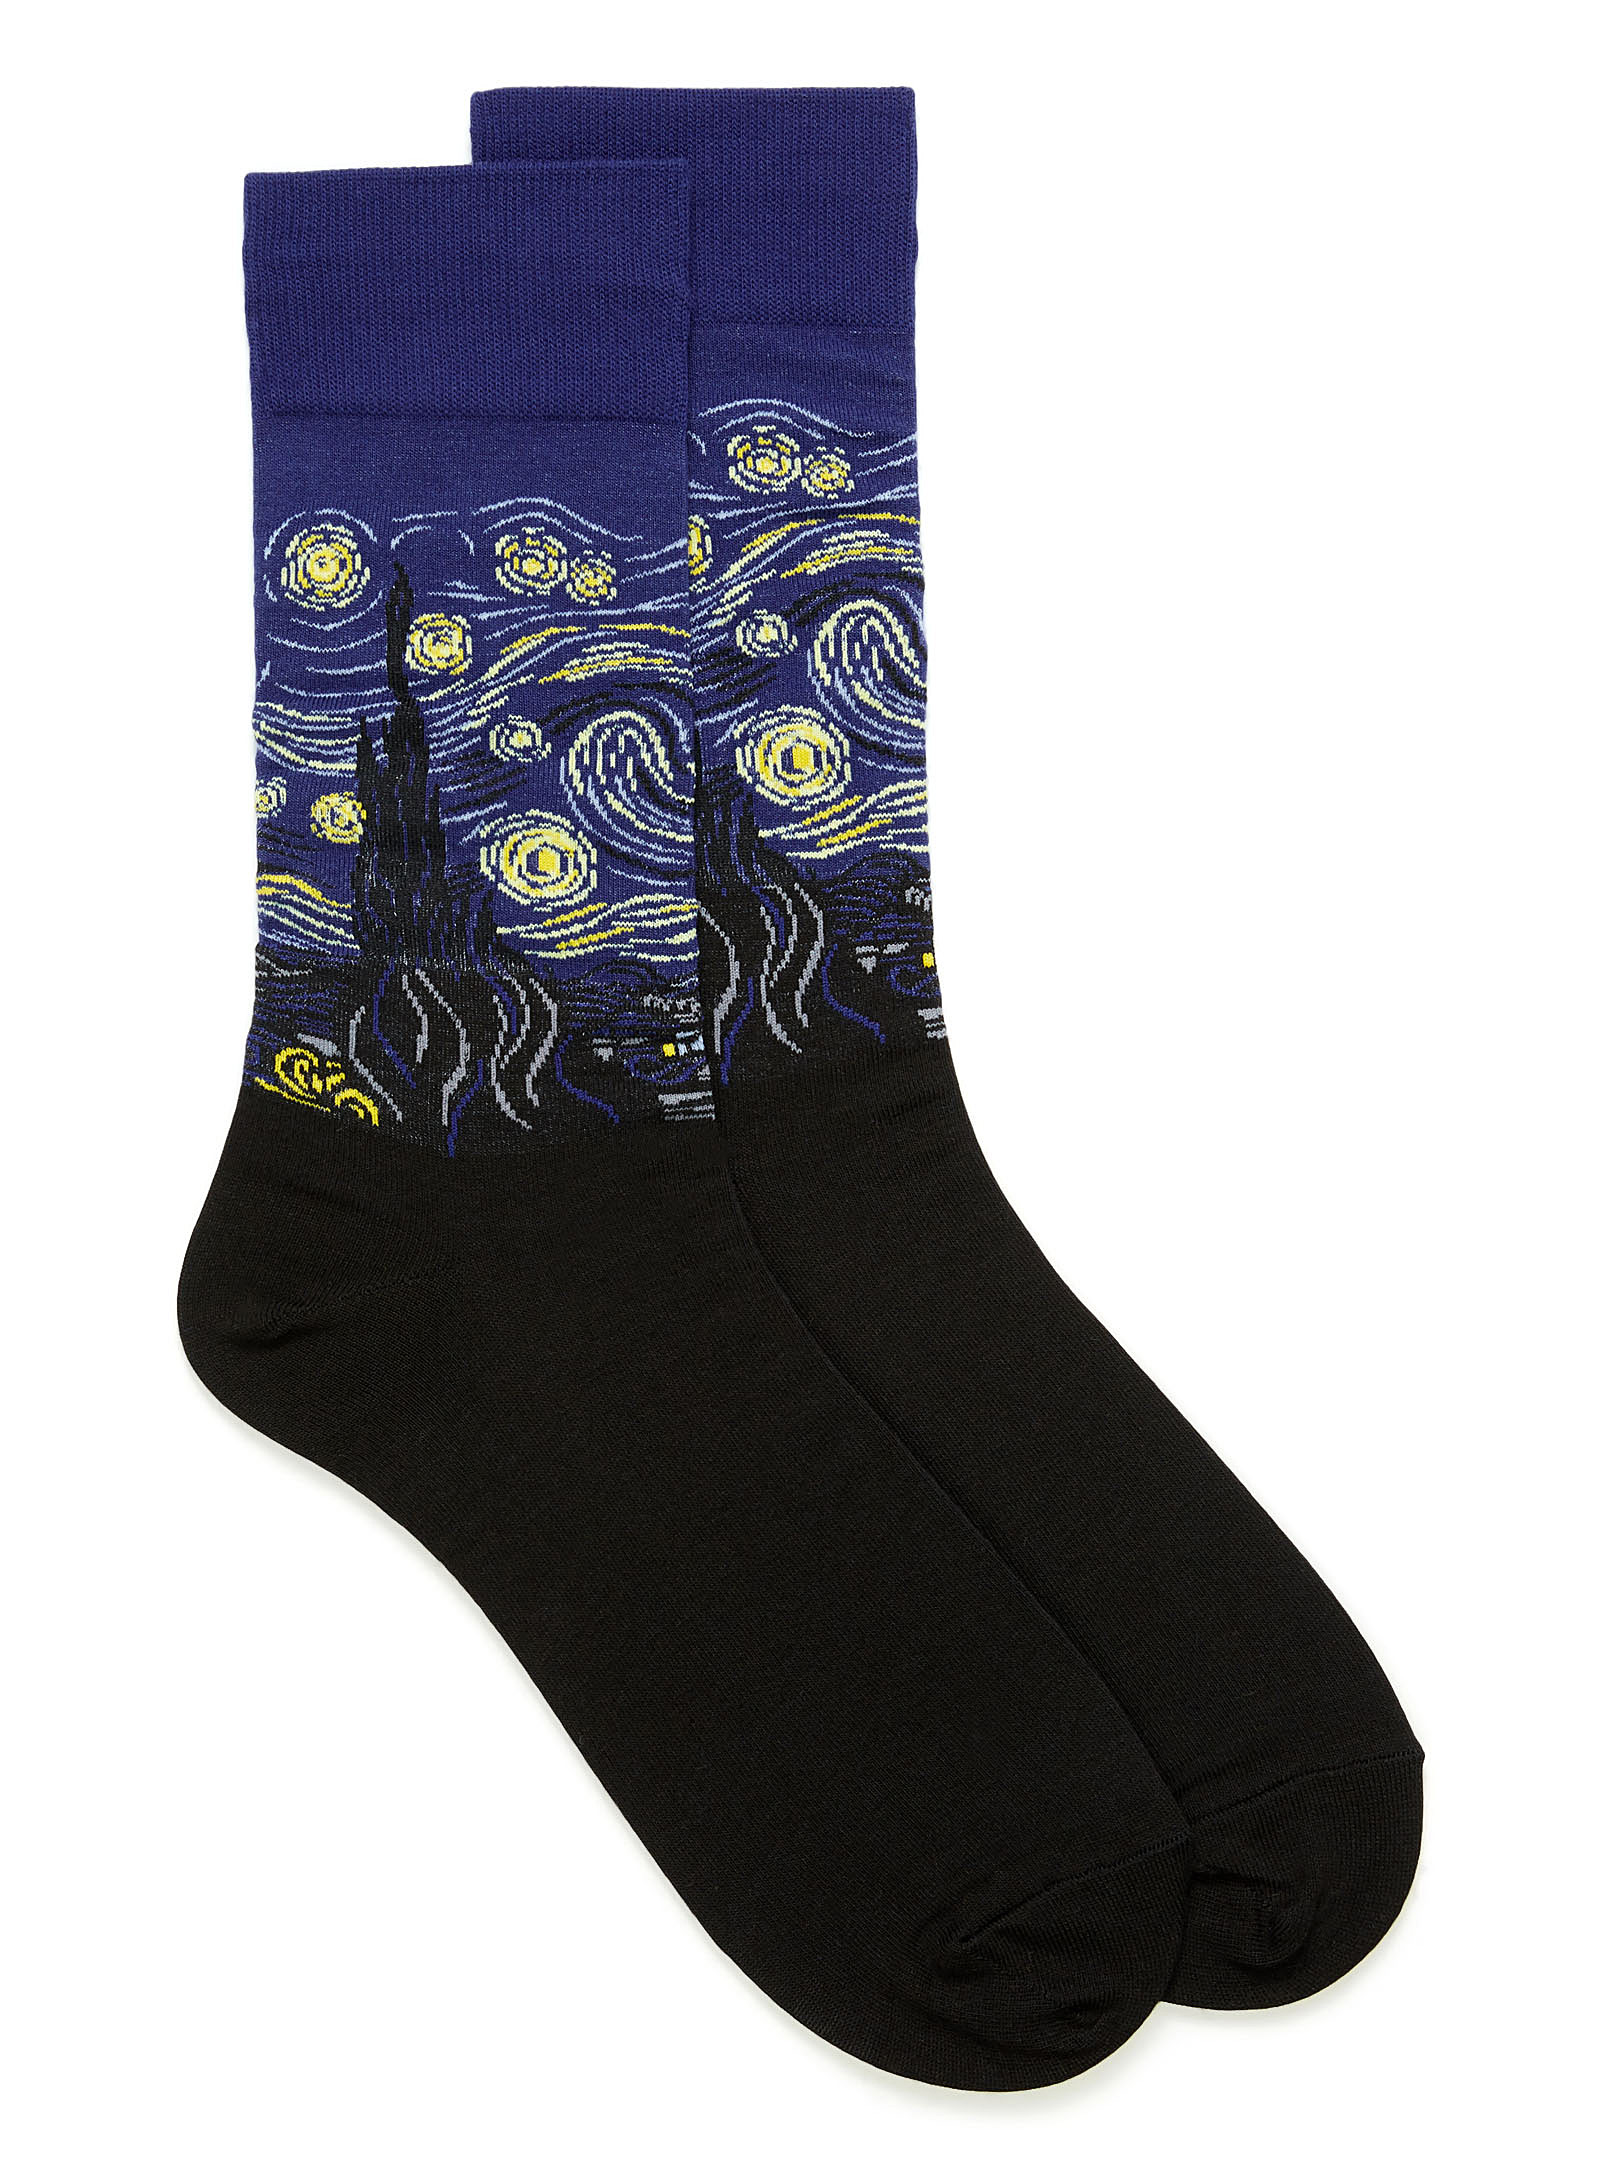 Hot Sox - Men's Starry night socks